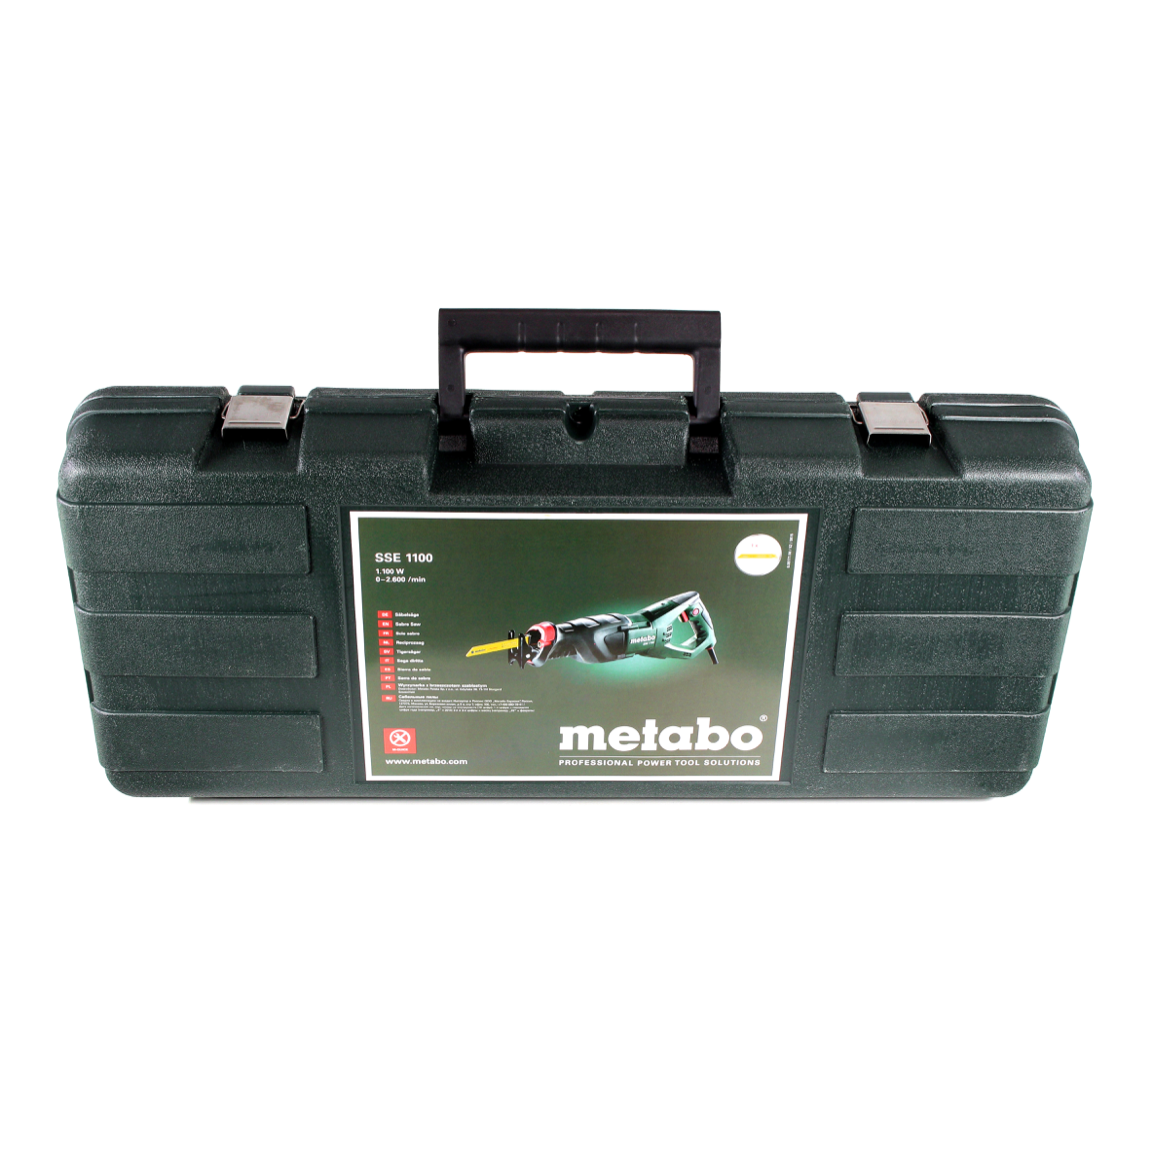 Metabo Säbelsäge SSE 1100 Koffer (606177500) – Toolbrothers 